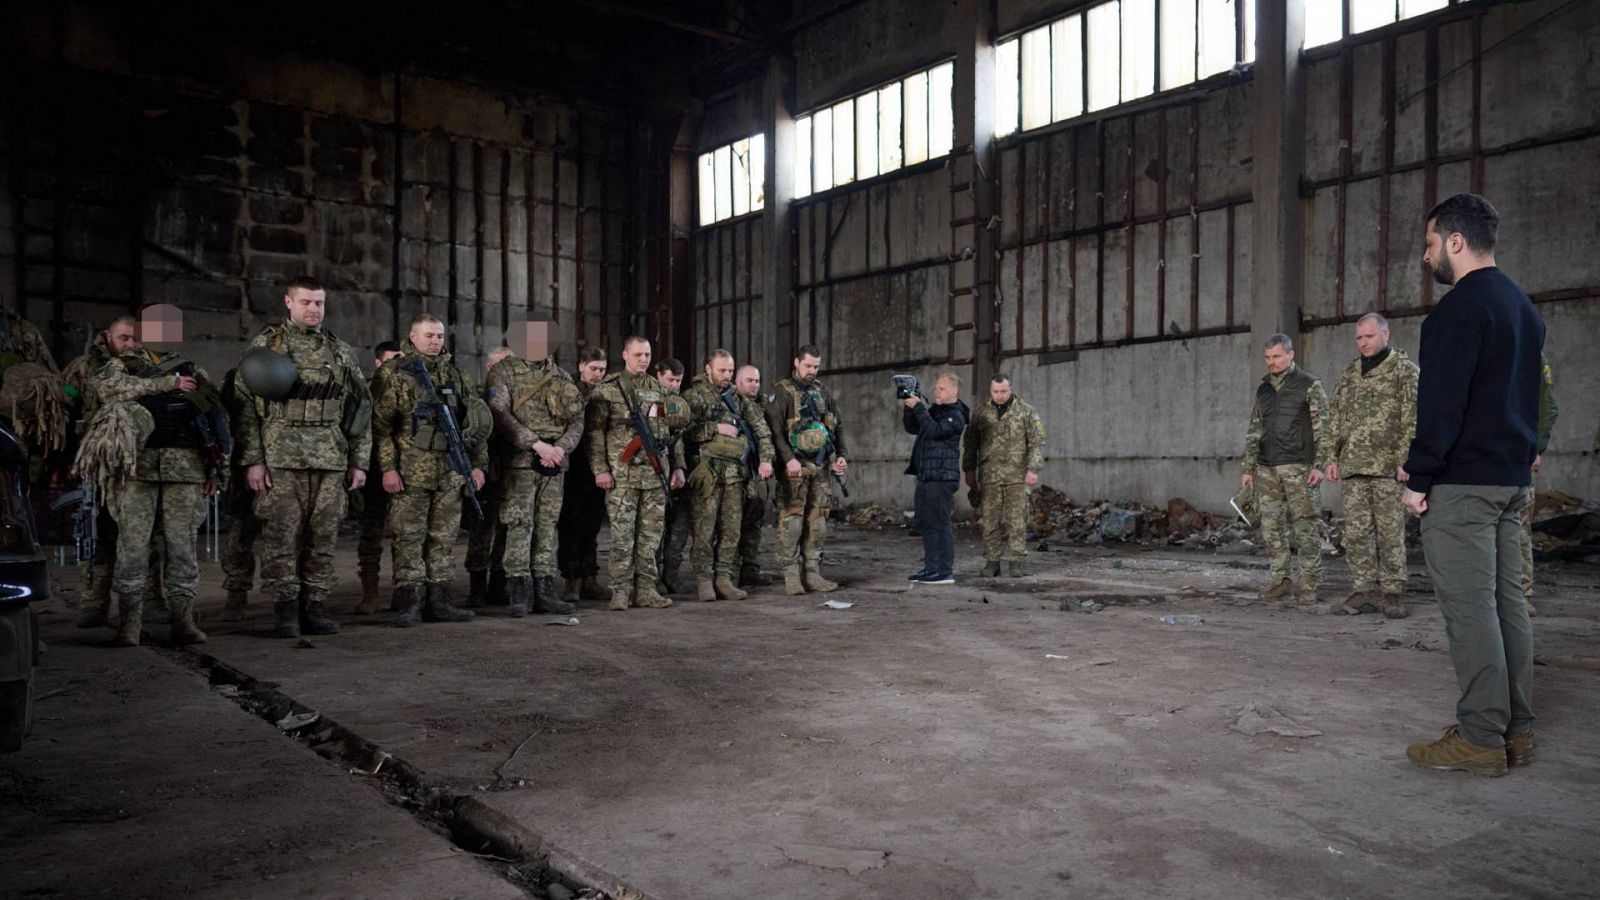 Imagen de la visita del presidente ucraniano, Volodimir Zelenski, a las tropas que lucha en el frente de Bajmut, el 23 de marzo de 2023. Fuente: Oficina de Prensa de la Presidencia ucraniana, Afp).